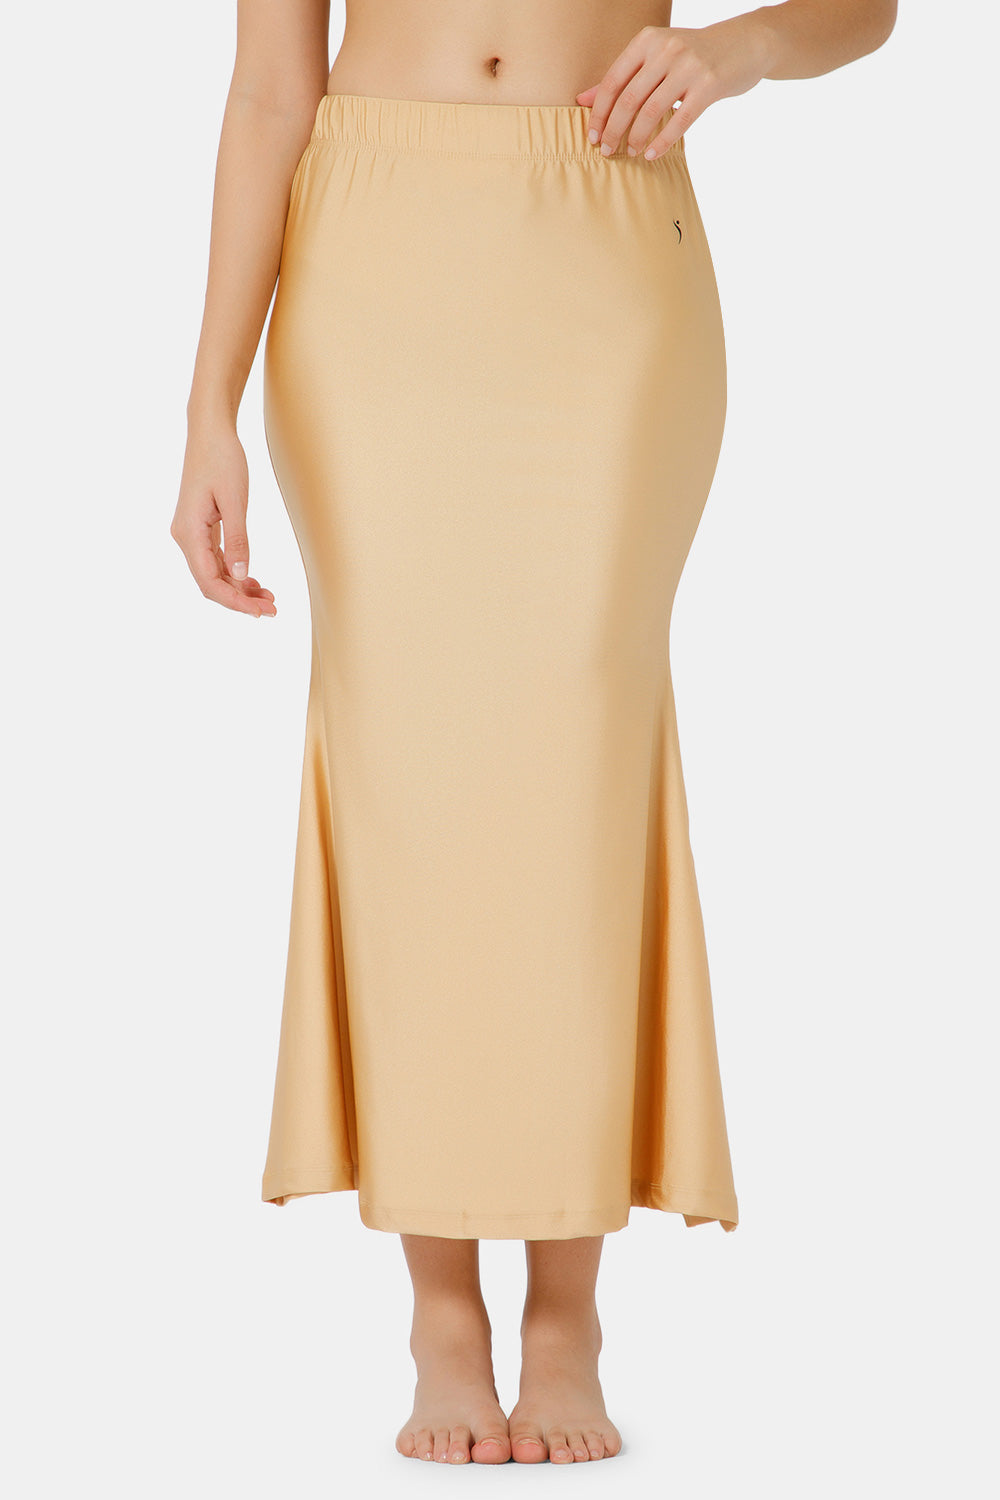 Buy The Secret Boutique Womens Cotton Saree Shapewear Petticoat, Gold dust  Colour Size-S at